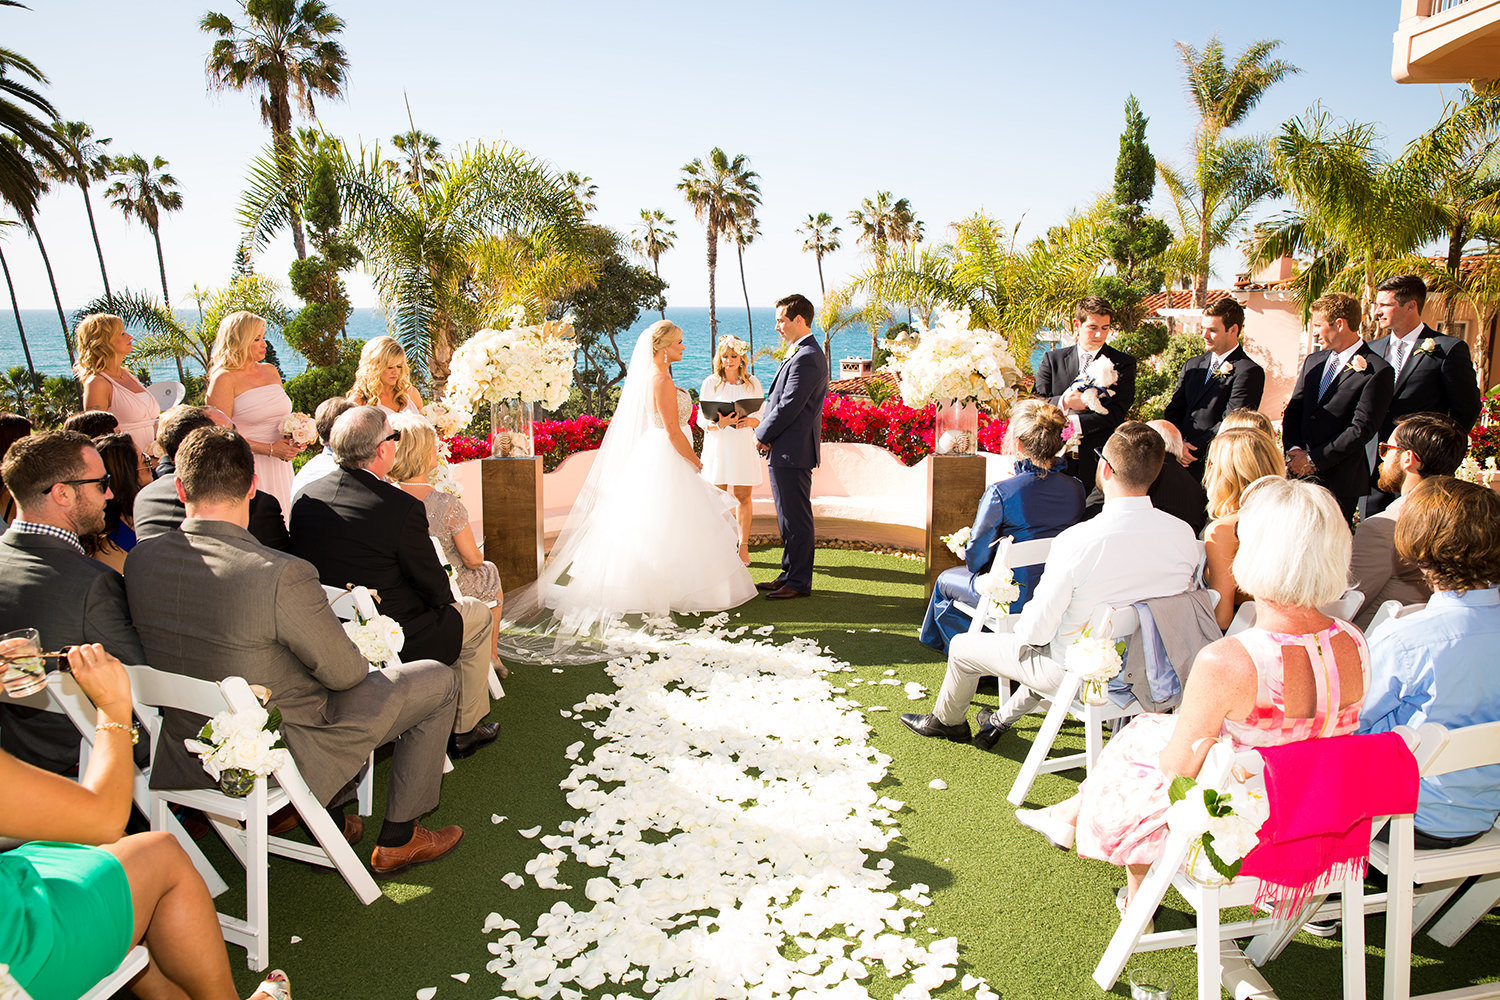 Spectacular wedding ceremony at La Valencia in La Jolla